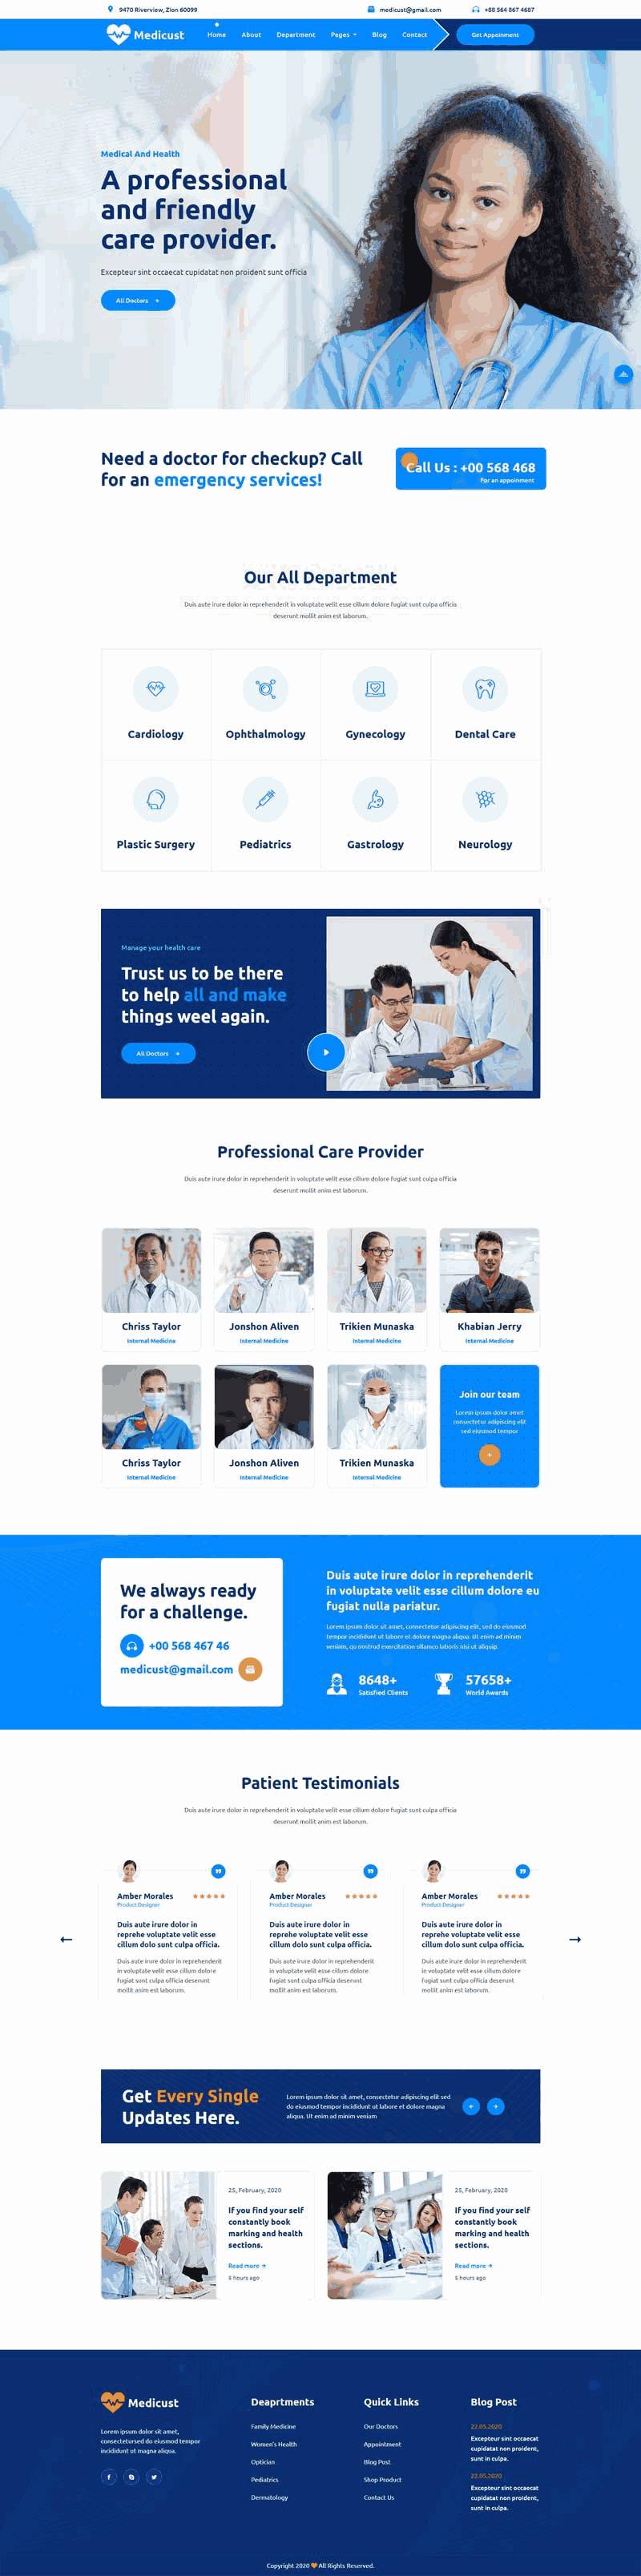 蓝色健康医疗服务机构Wordpress模板主题